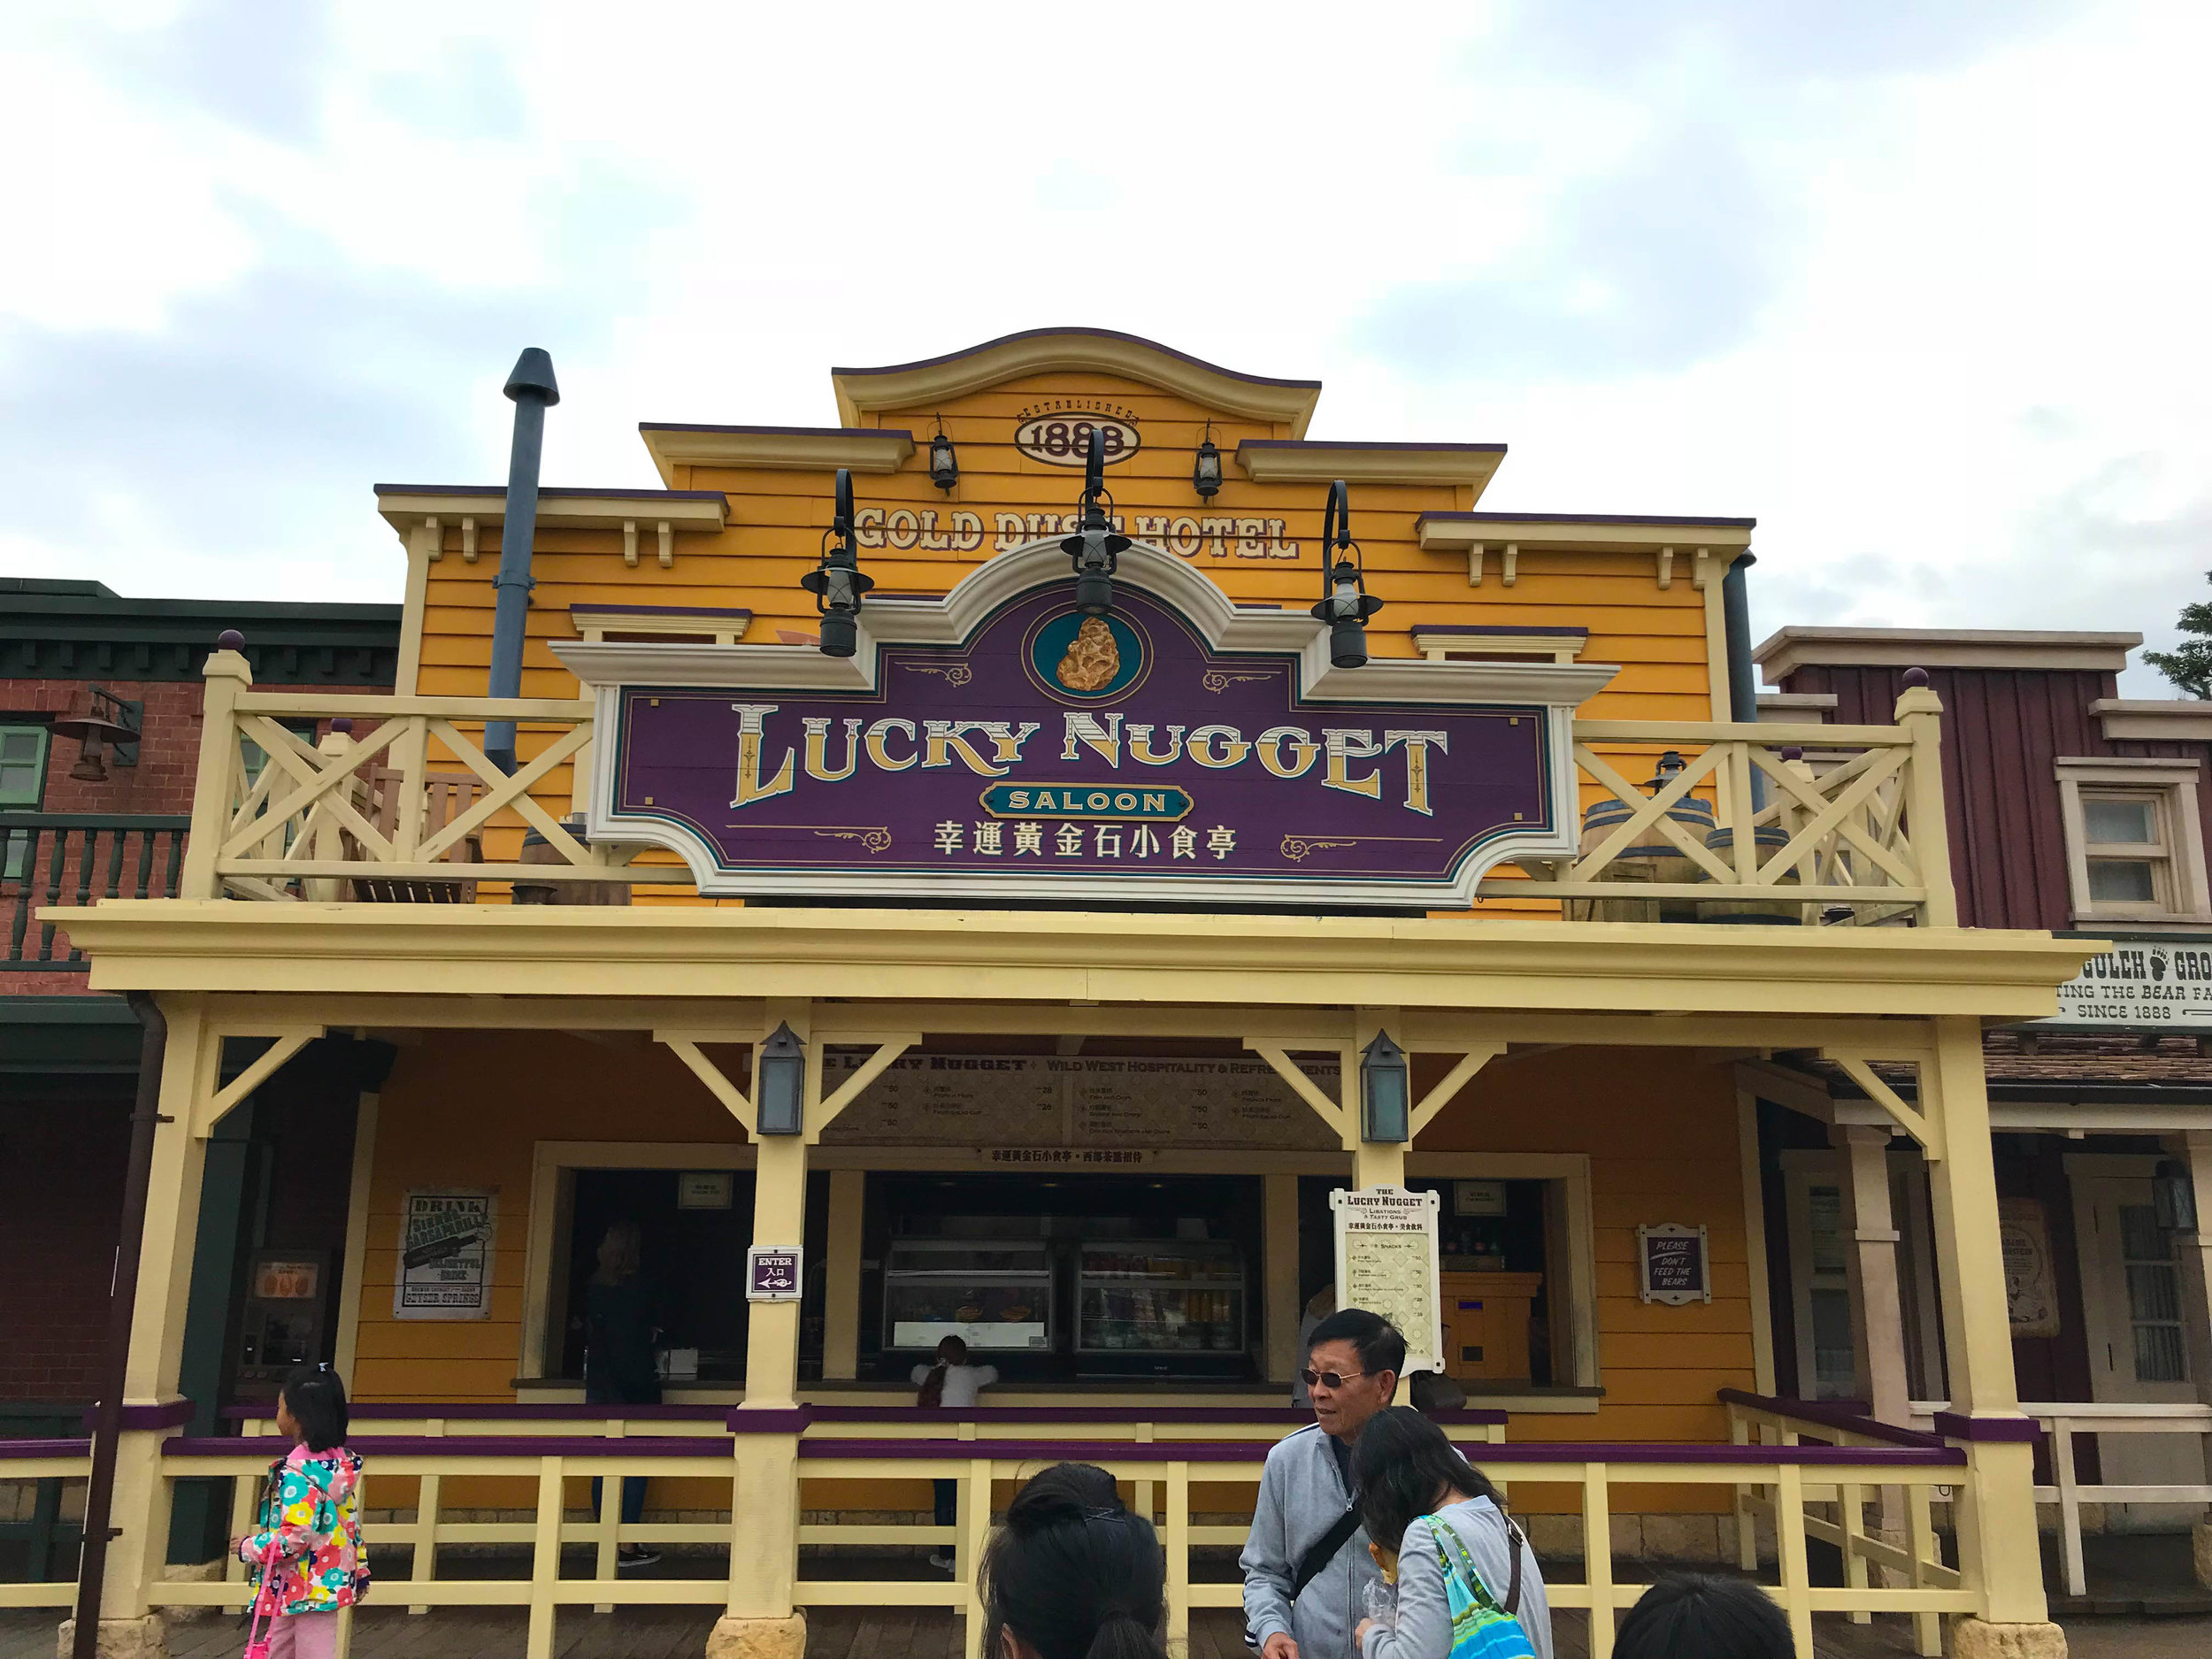 Hong Kong Disneyland - Frontierland Lucky Nugget